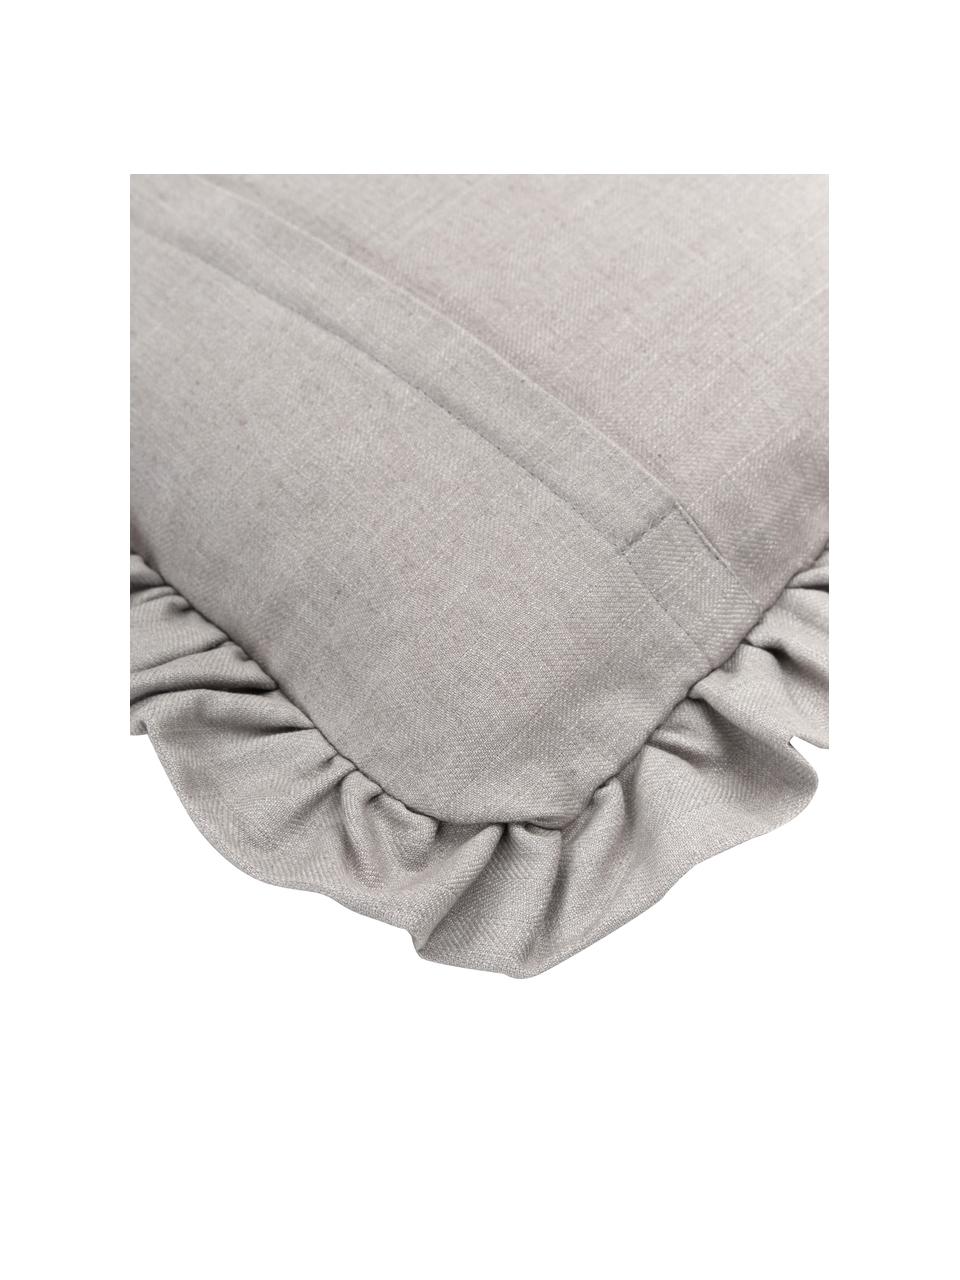 Poszewka na poduszkę z falbanką Camille, 60% poliester, 25% bawełna, 15% len, Szary, S 45 x D 45 cm